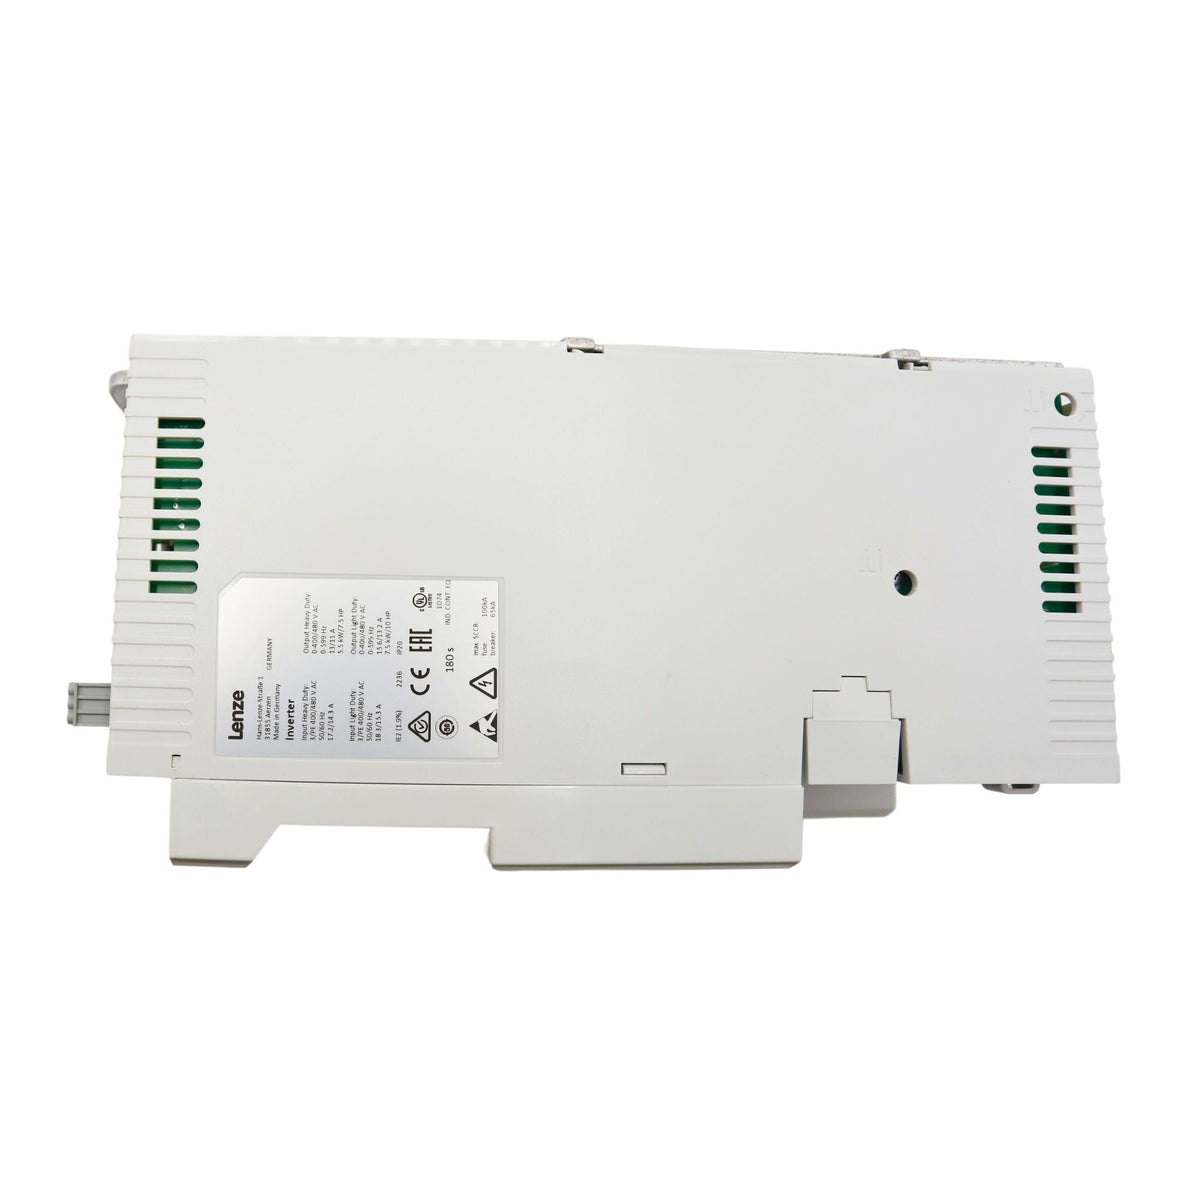 Lenze | i510 10hp Cabinet mount 480volt 5digital inputs, 2 analog inputs, 1 digital output 1 analog Output, 1 relay | I51BE275F10V11000S - side view